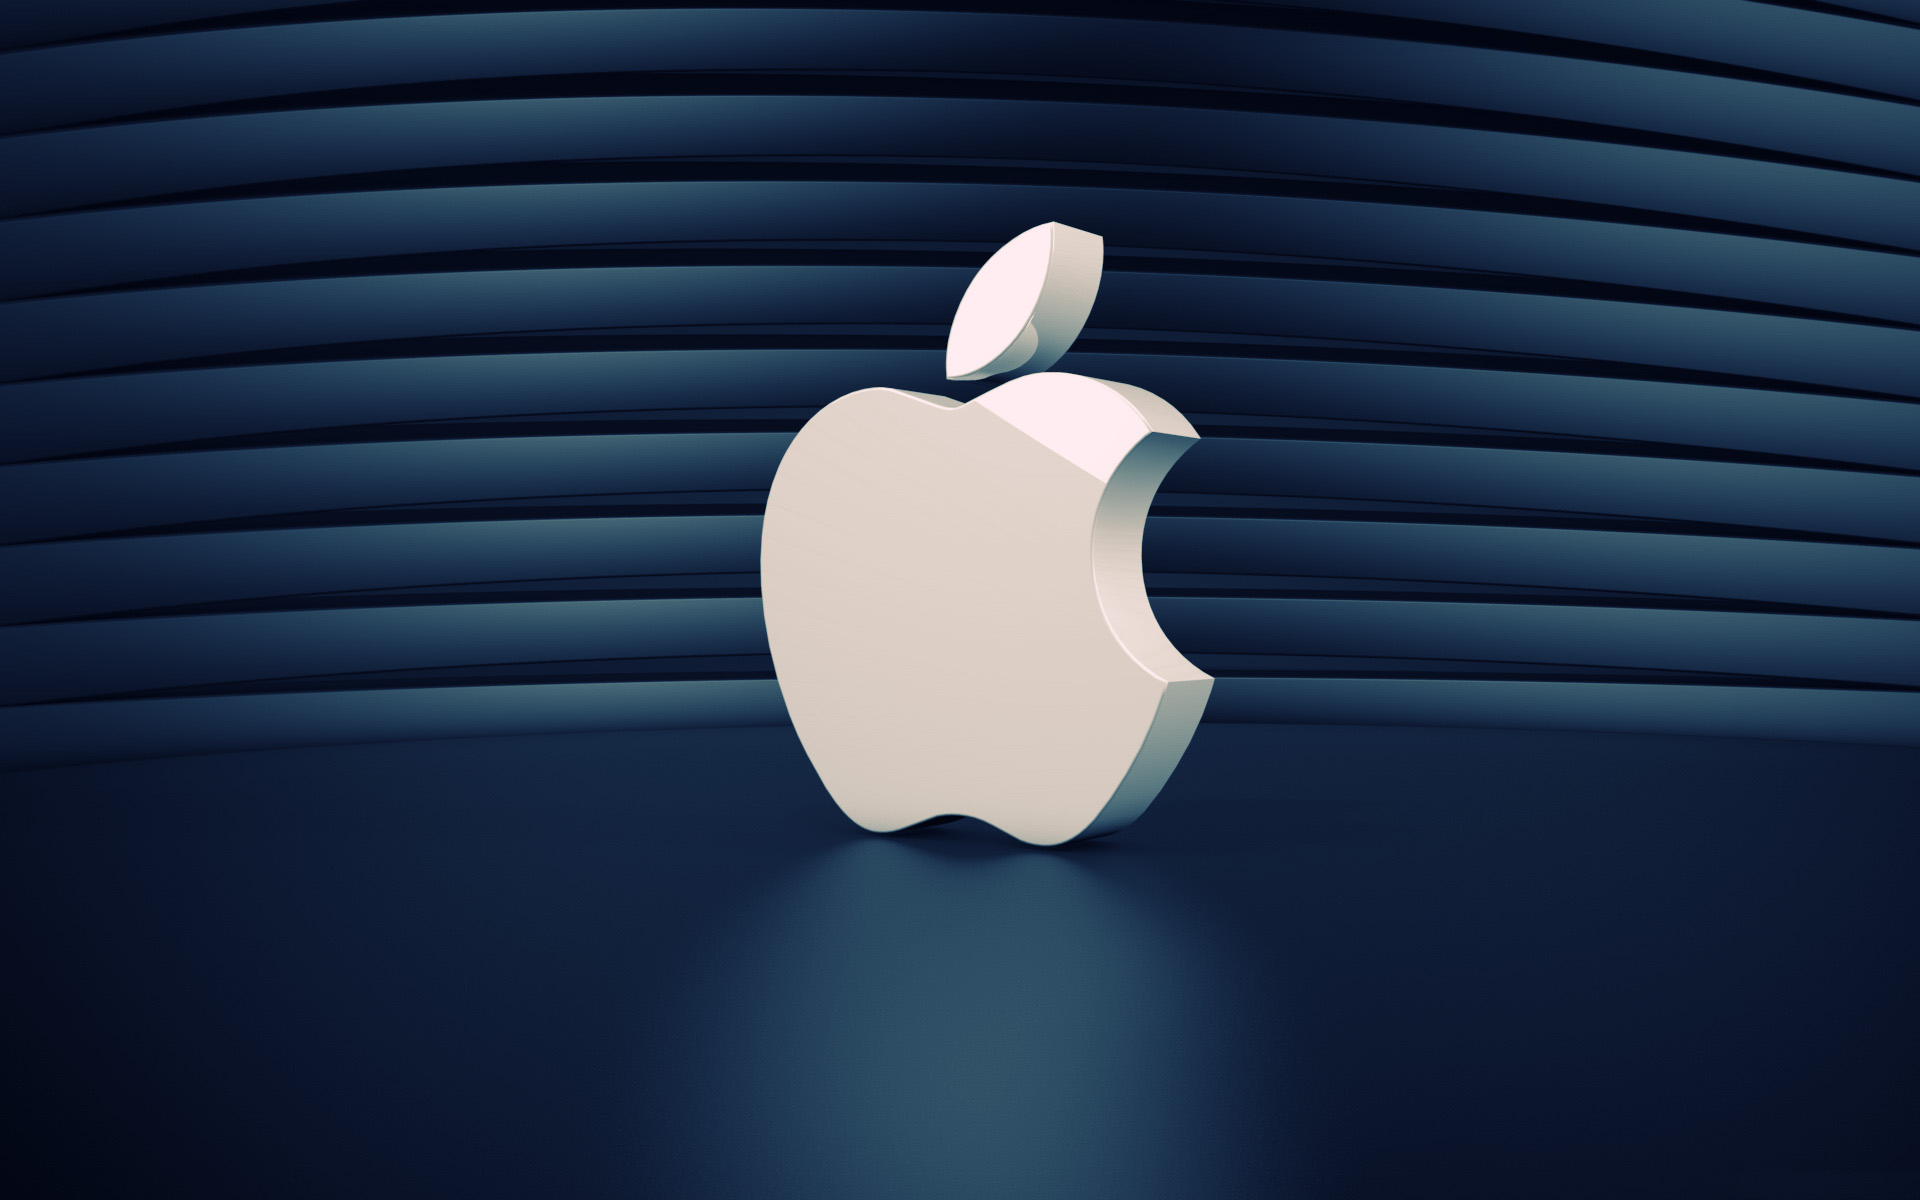 HD Apple Mac Desktop Wallpaper Apps On Background